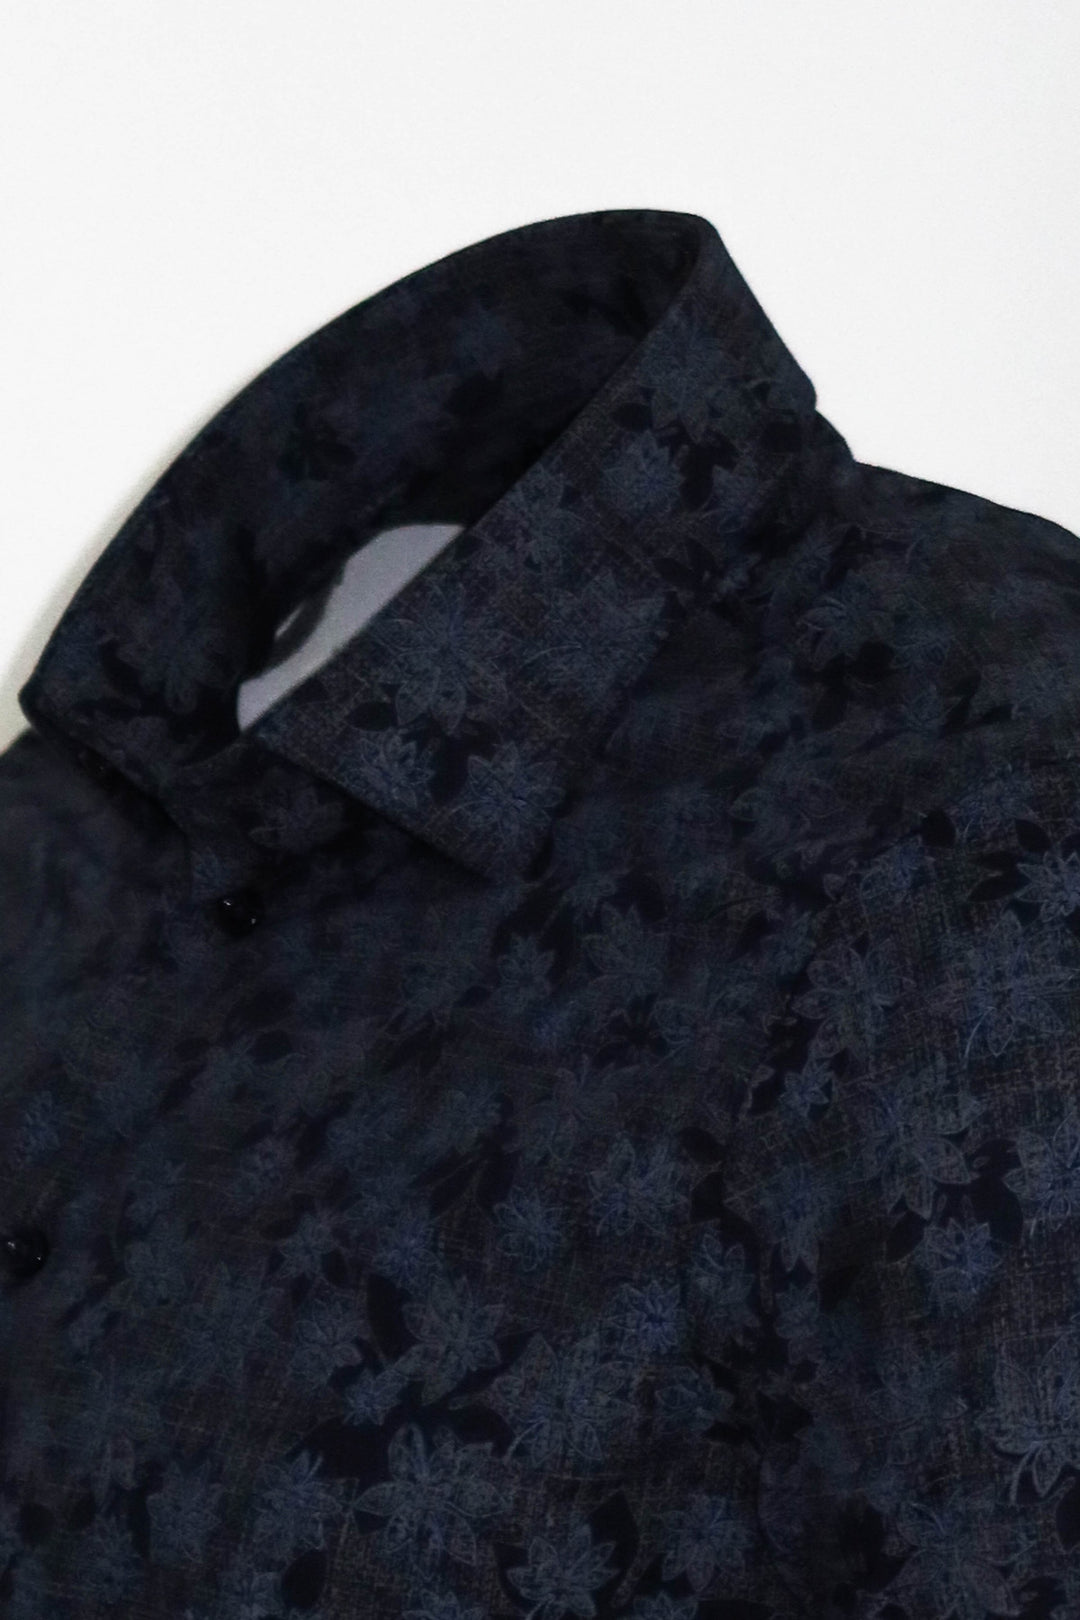 Bloom Patterned Dark Blue Slim Fir Shirt - Wessi